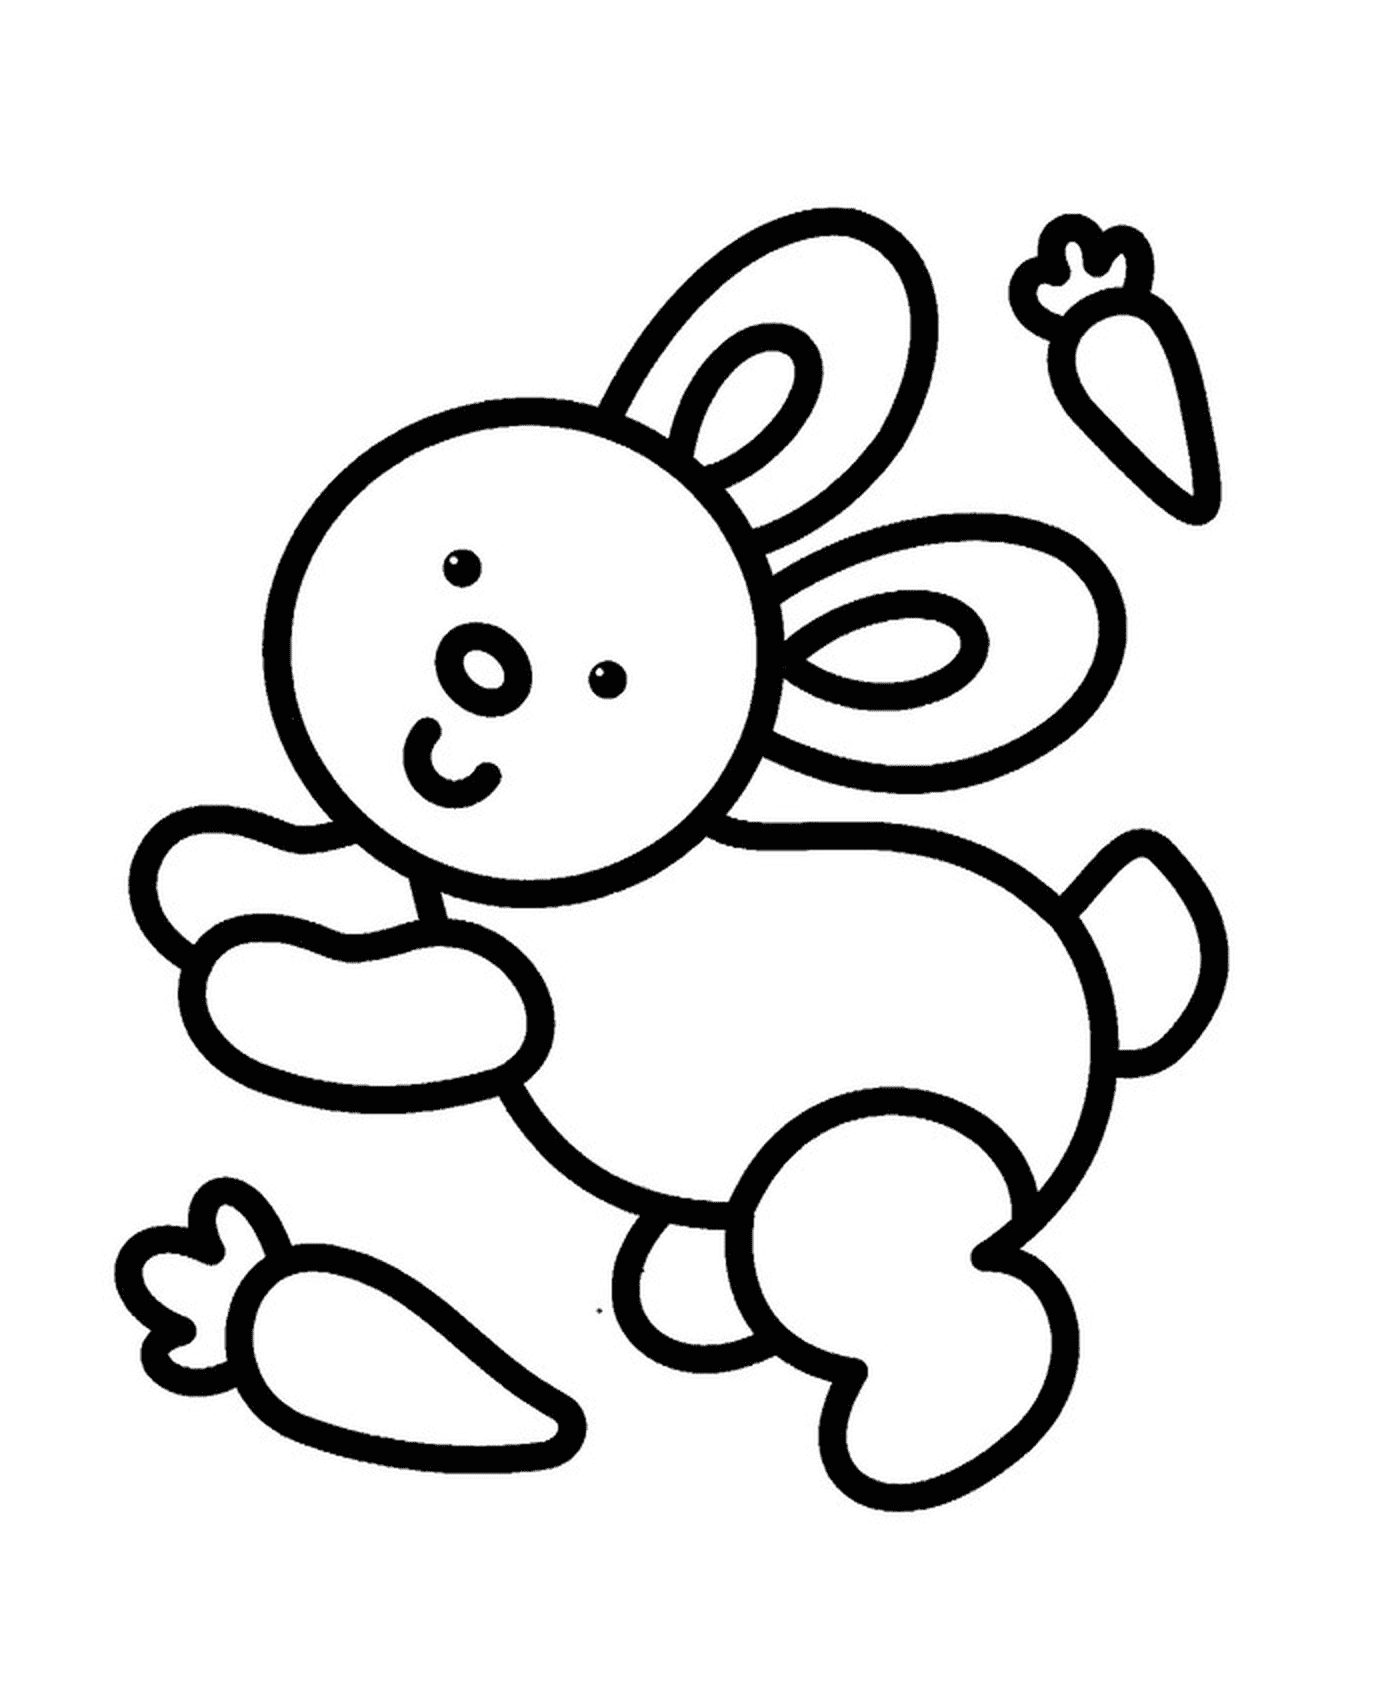  Un coniglio facile da disegnare per i bambini dell'asilo 